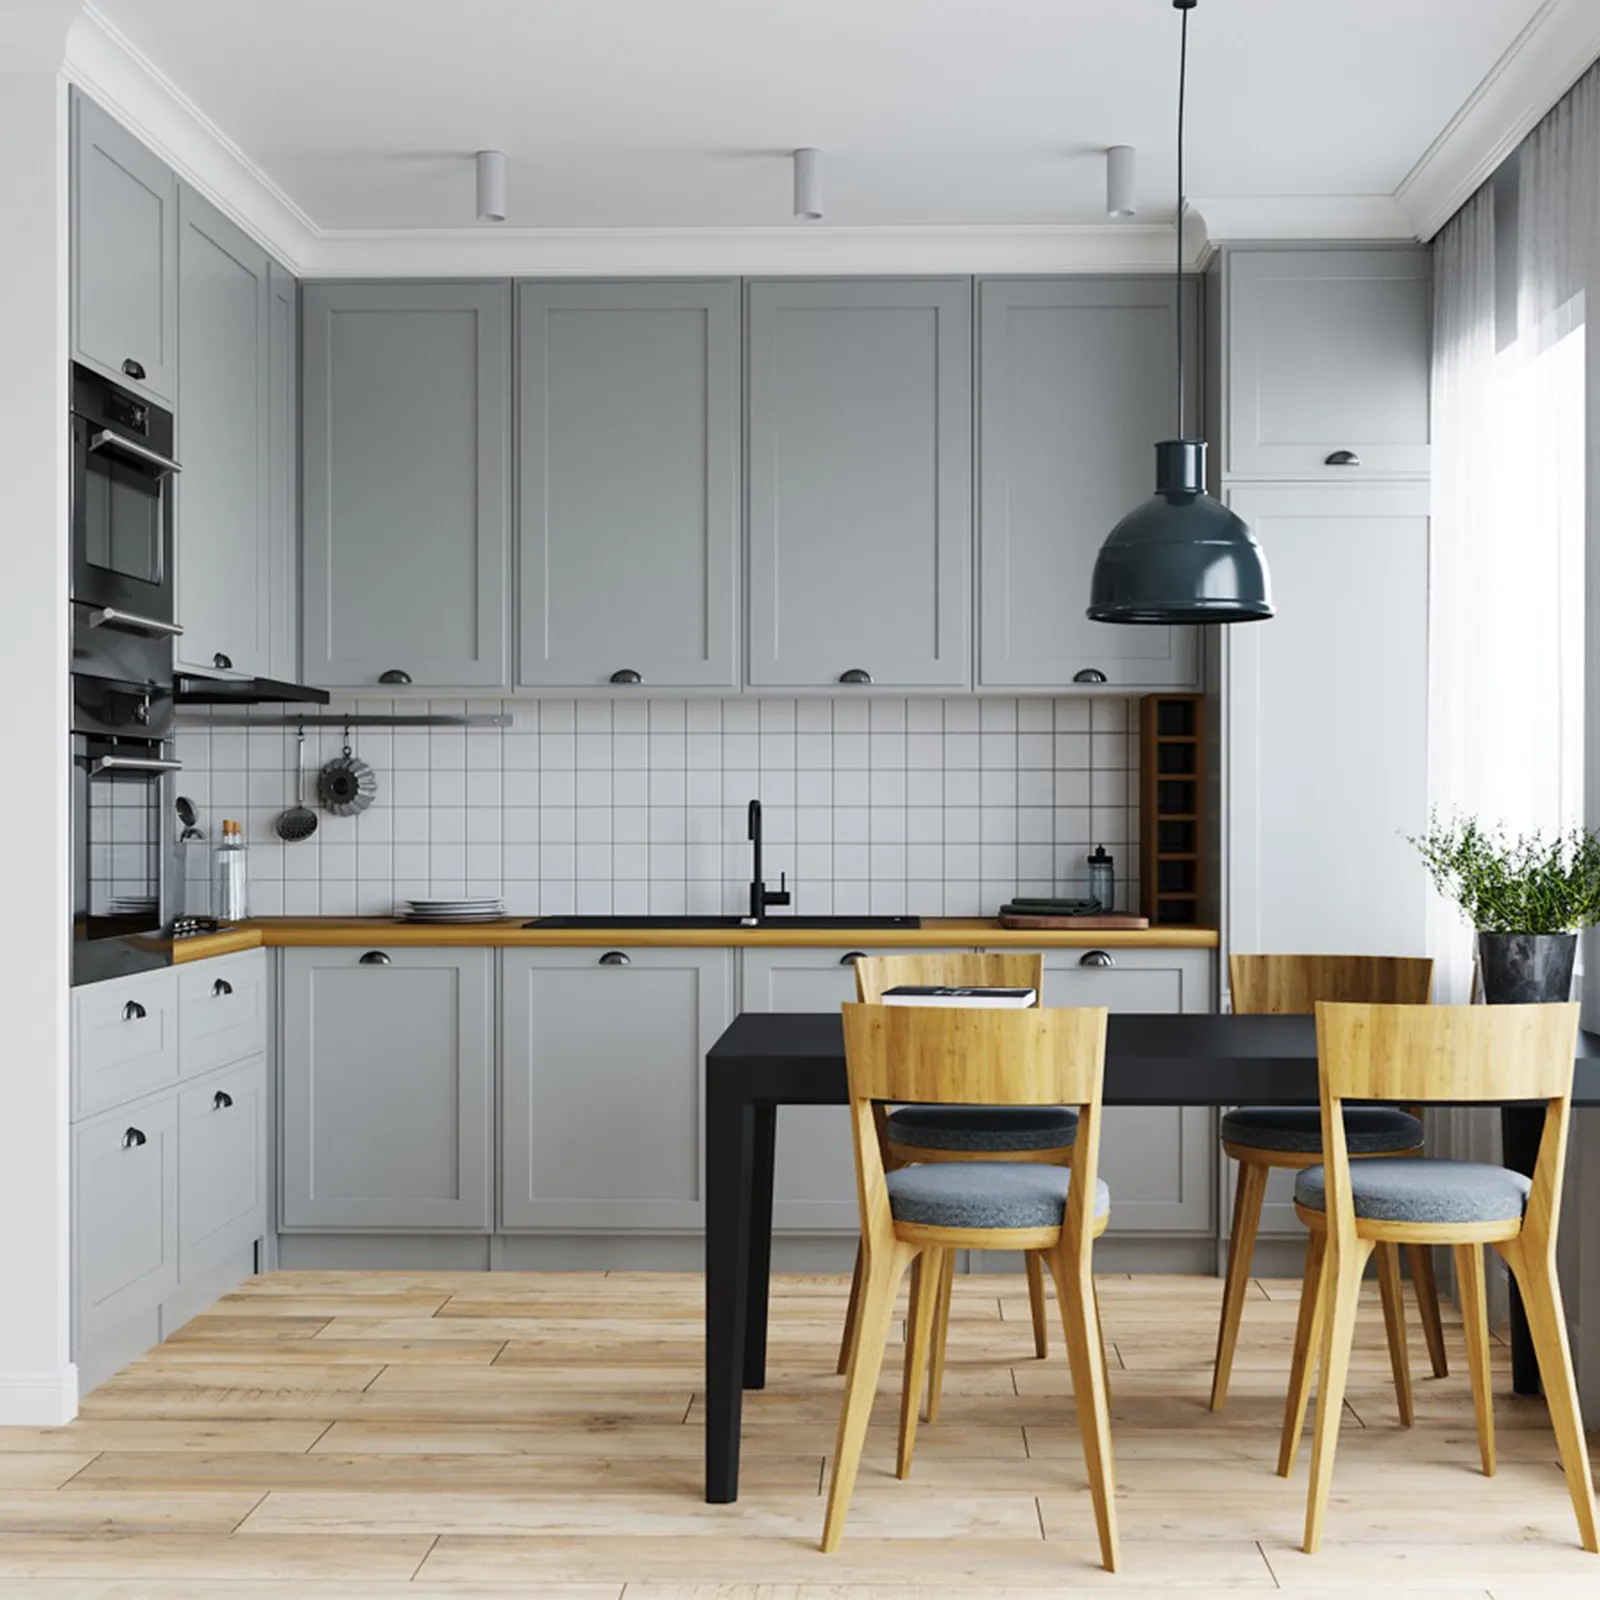 BFP One Stop Design gratuito personalizzazione di tutta la casa prezzo di fabbrica cucina modulare moderna